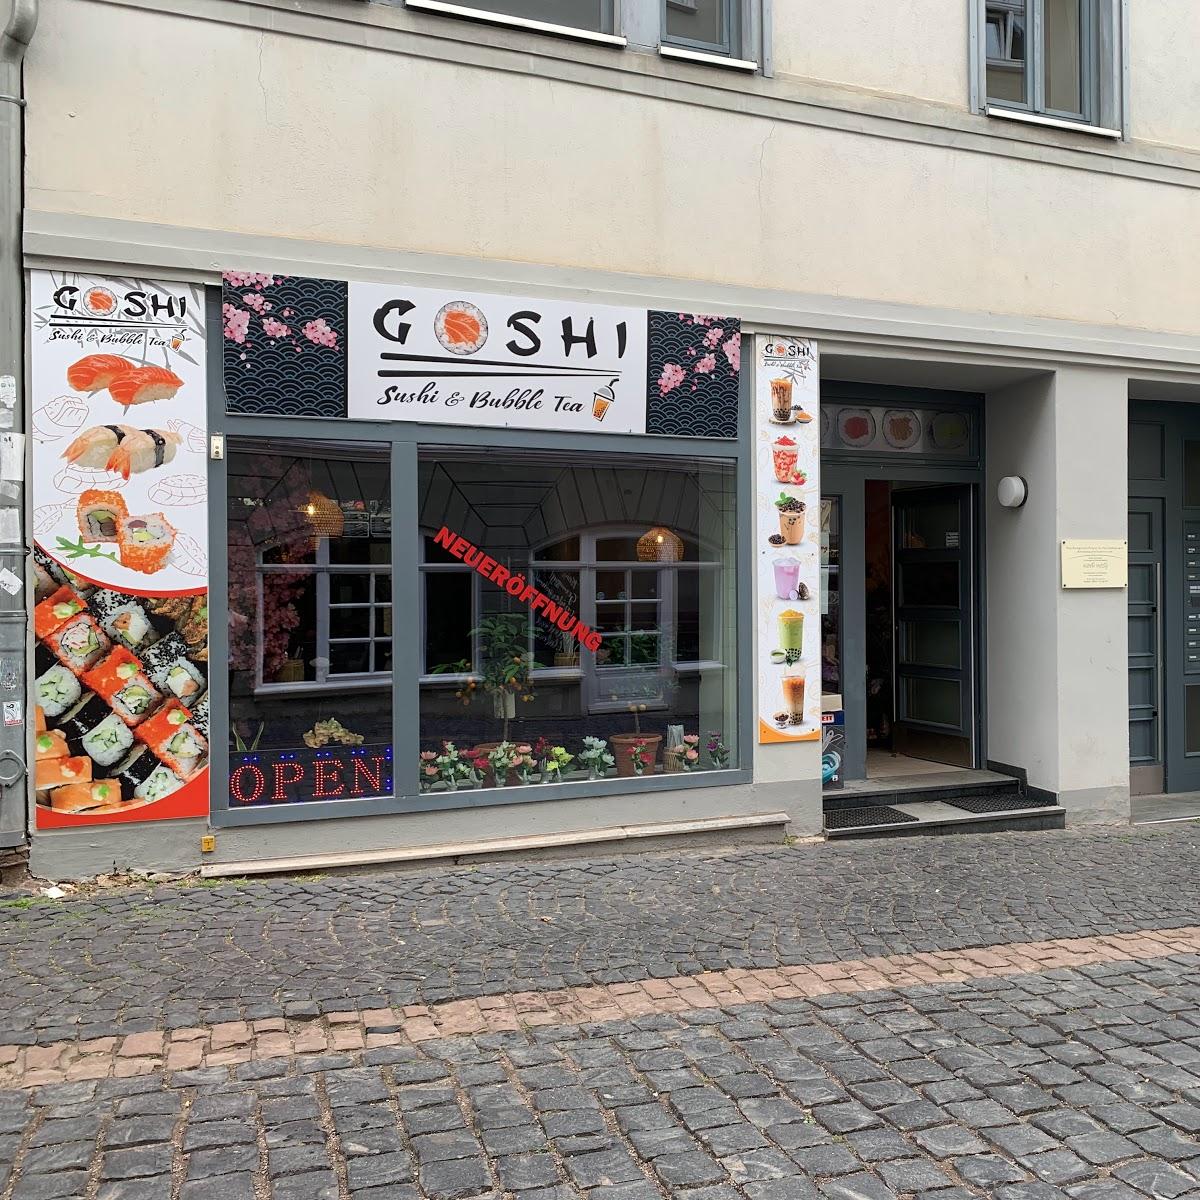 Restaurant "Goshi - Sushi x Bubble Tea" in Gotha